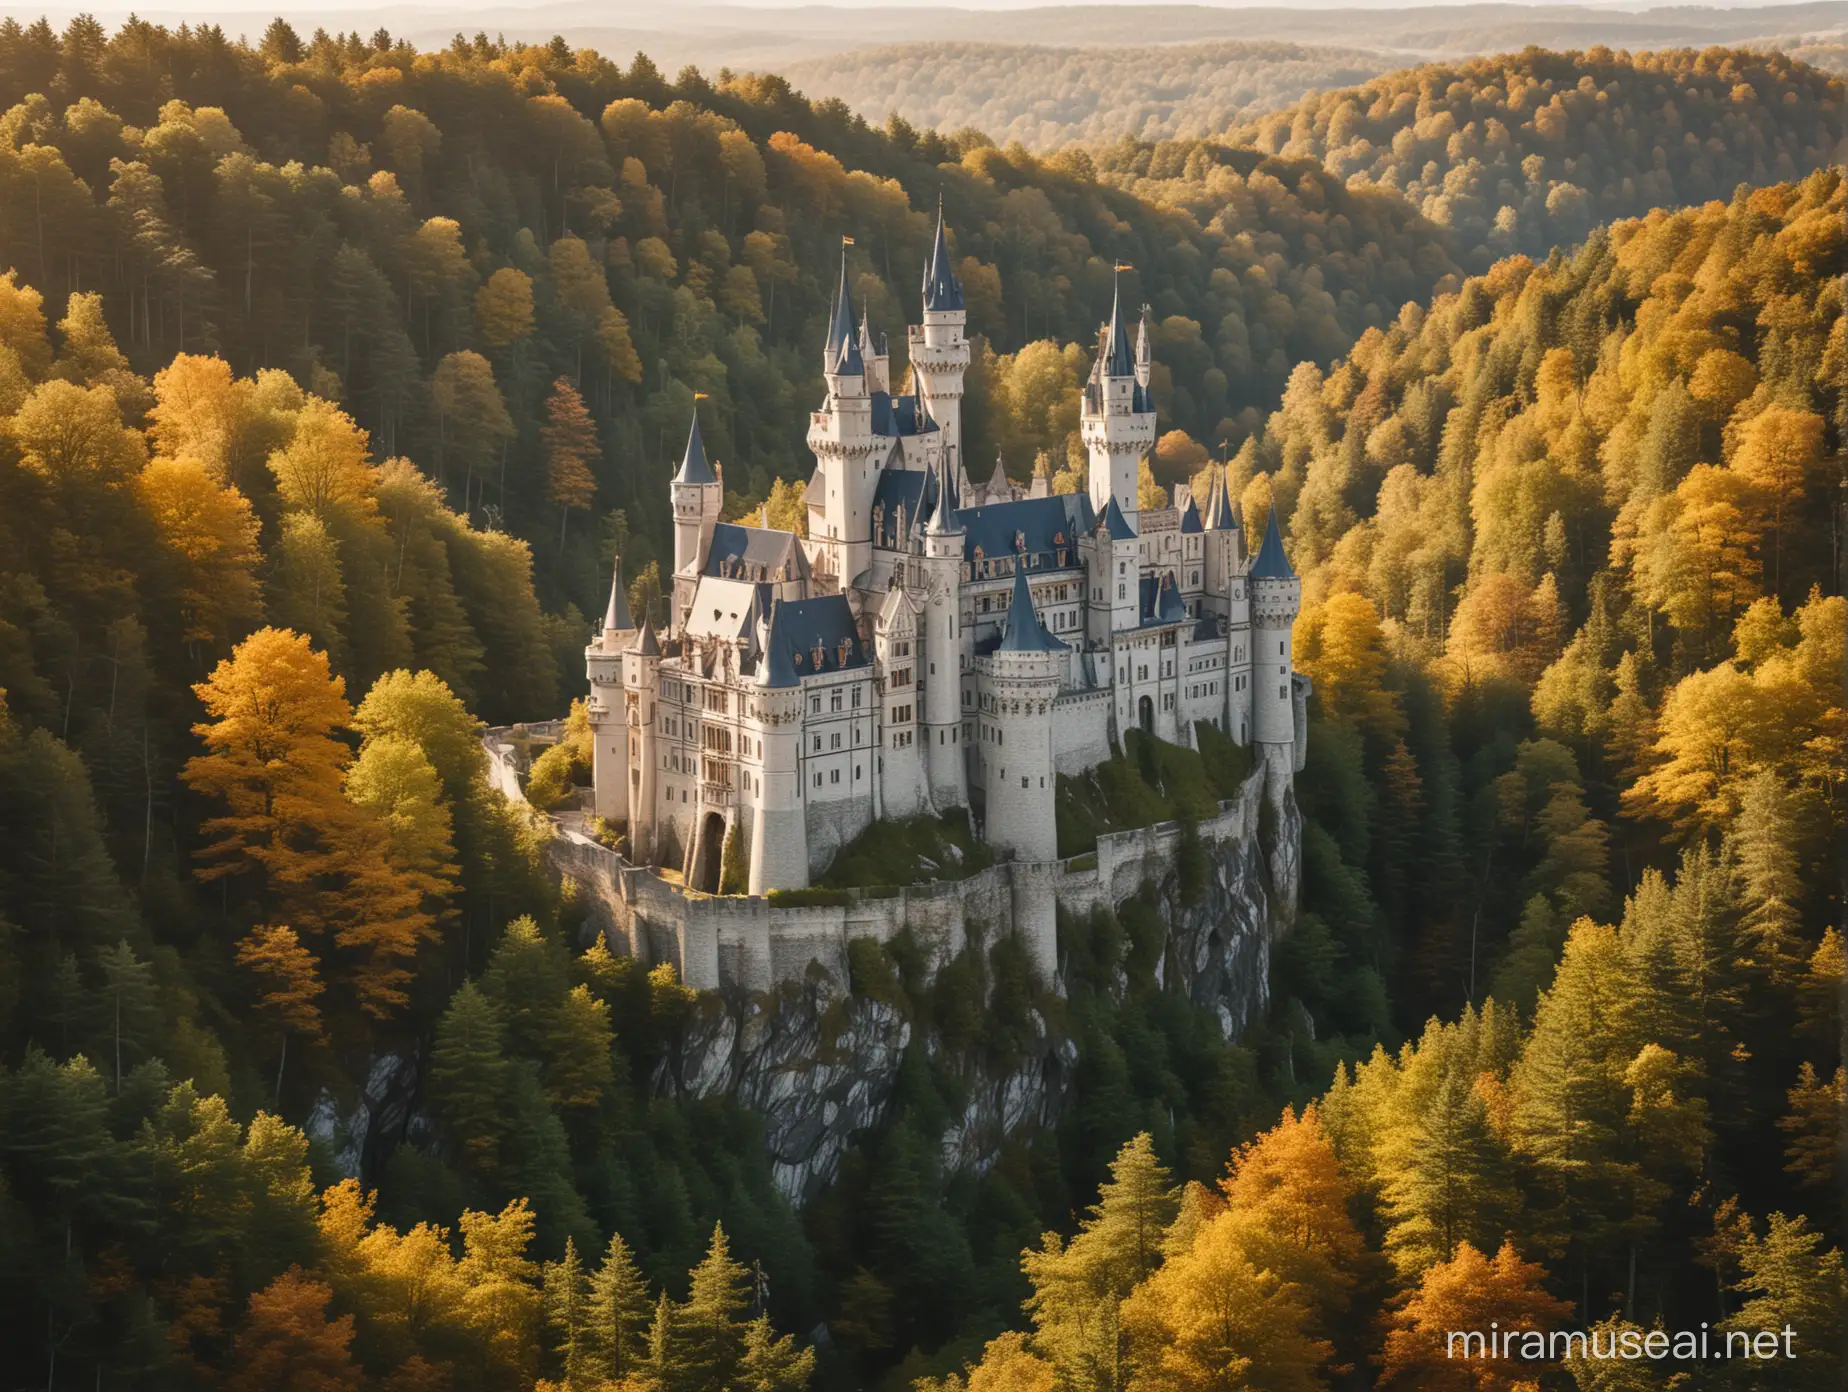 immense château majestueux de conte de fée entourée d'une belle forêt magique et scilntillante